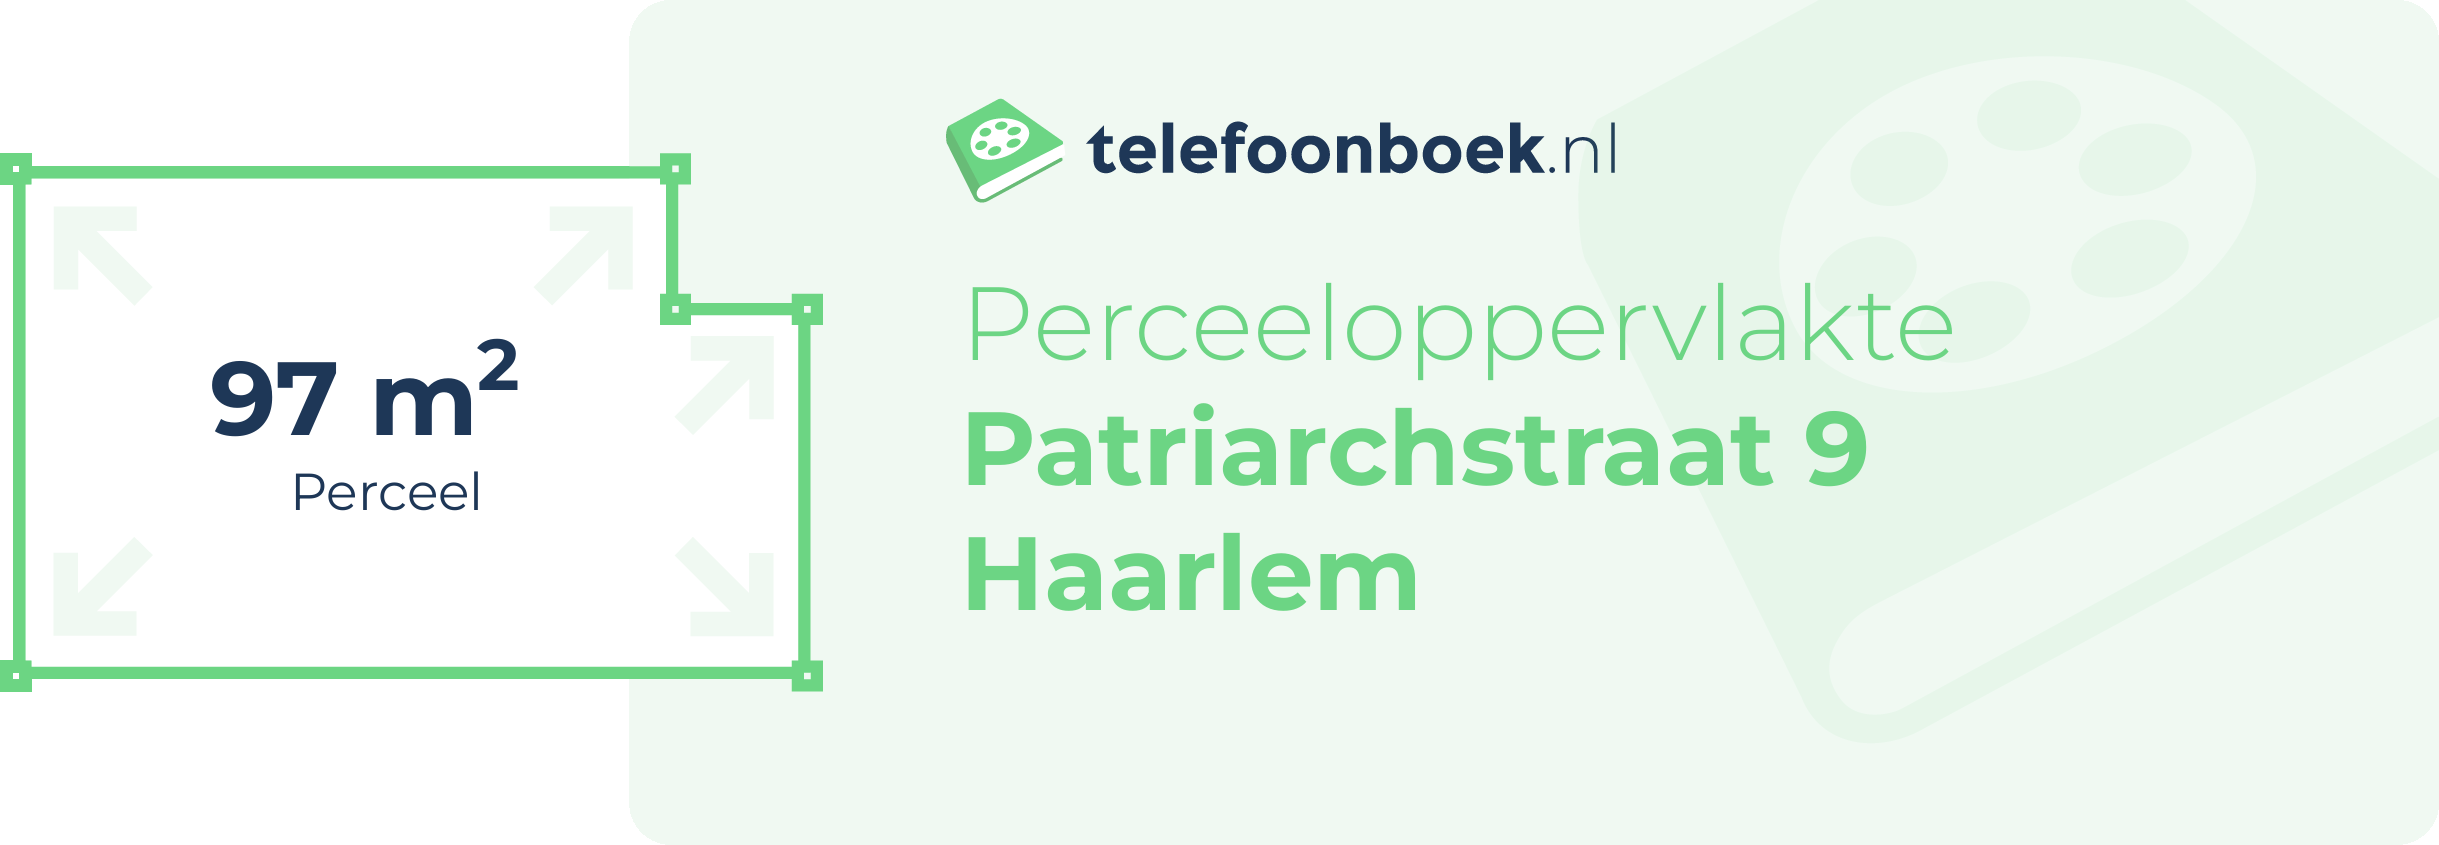 Perceeloppervlakte Patriarchstraat 9 Haarlem